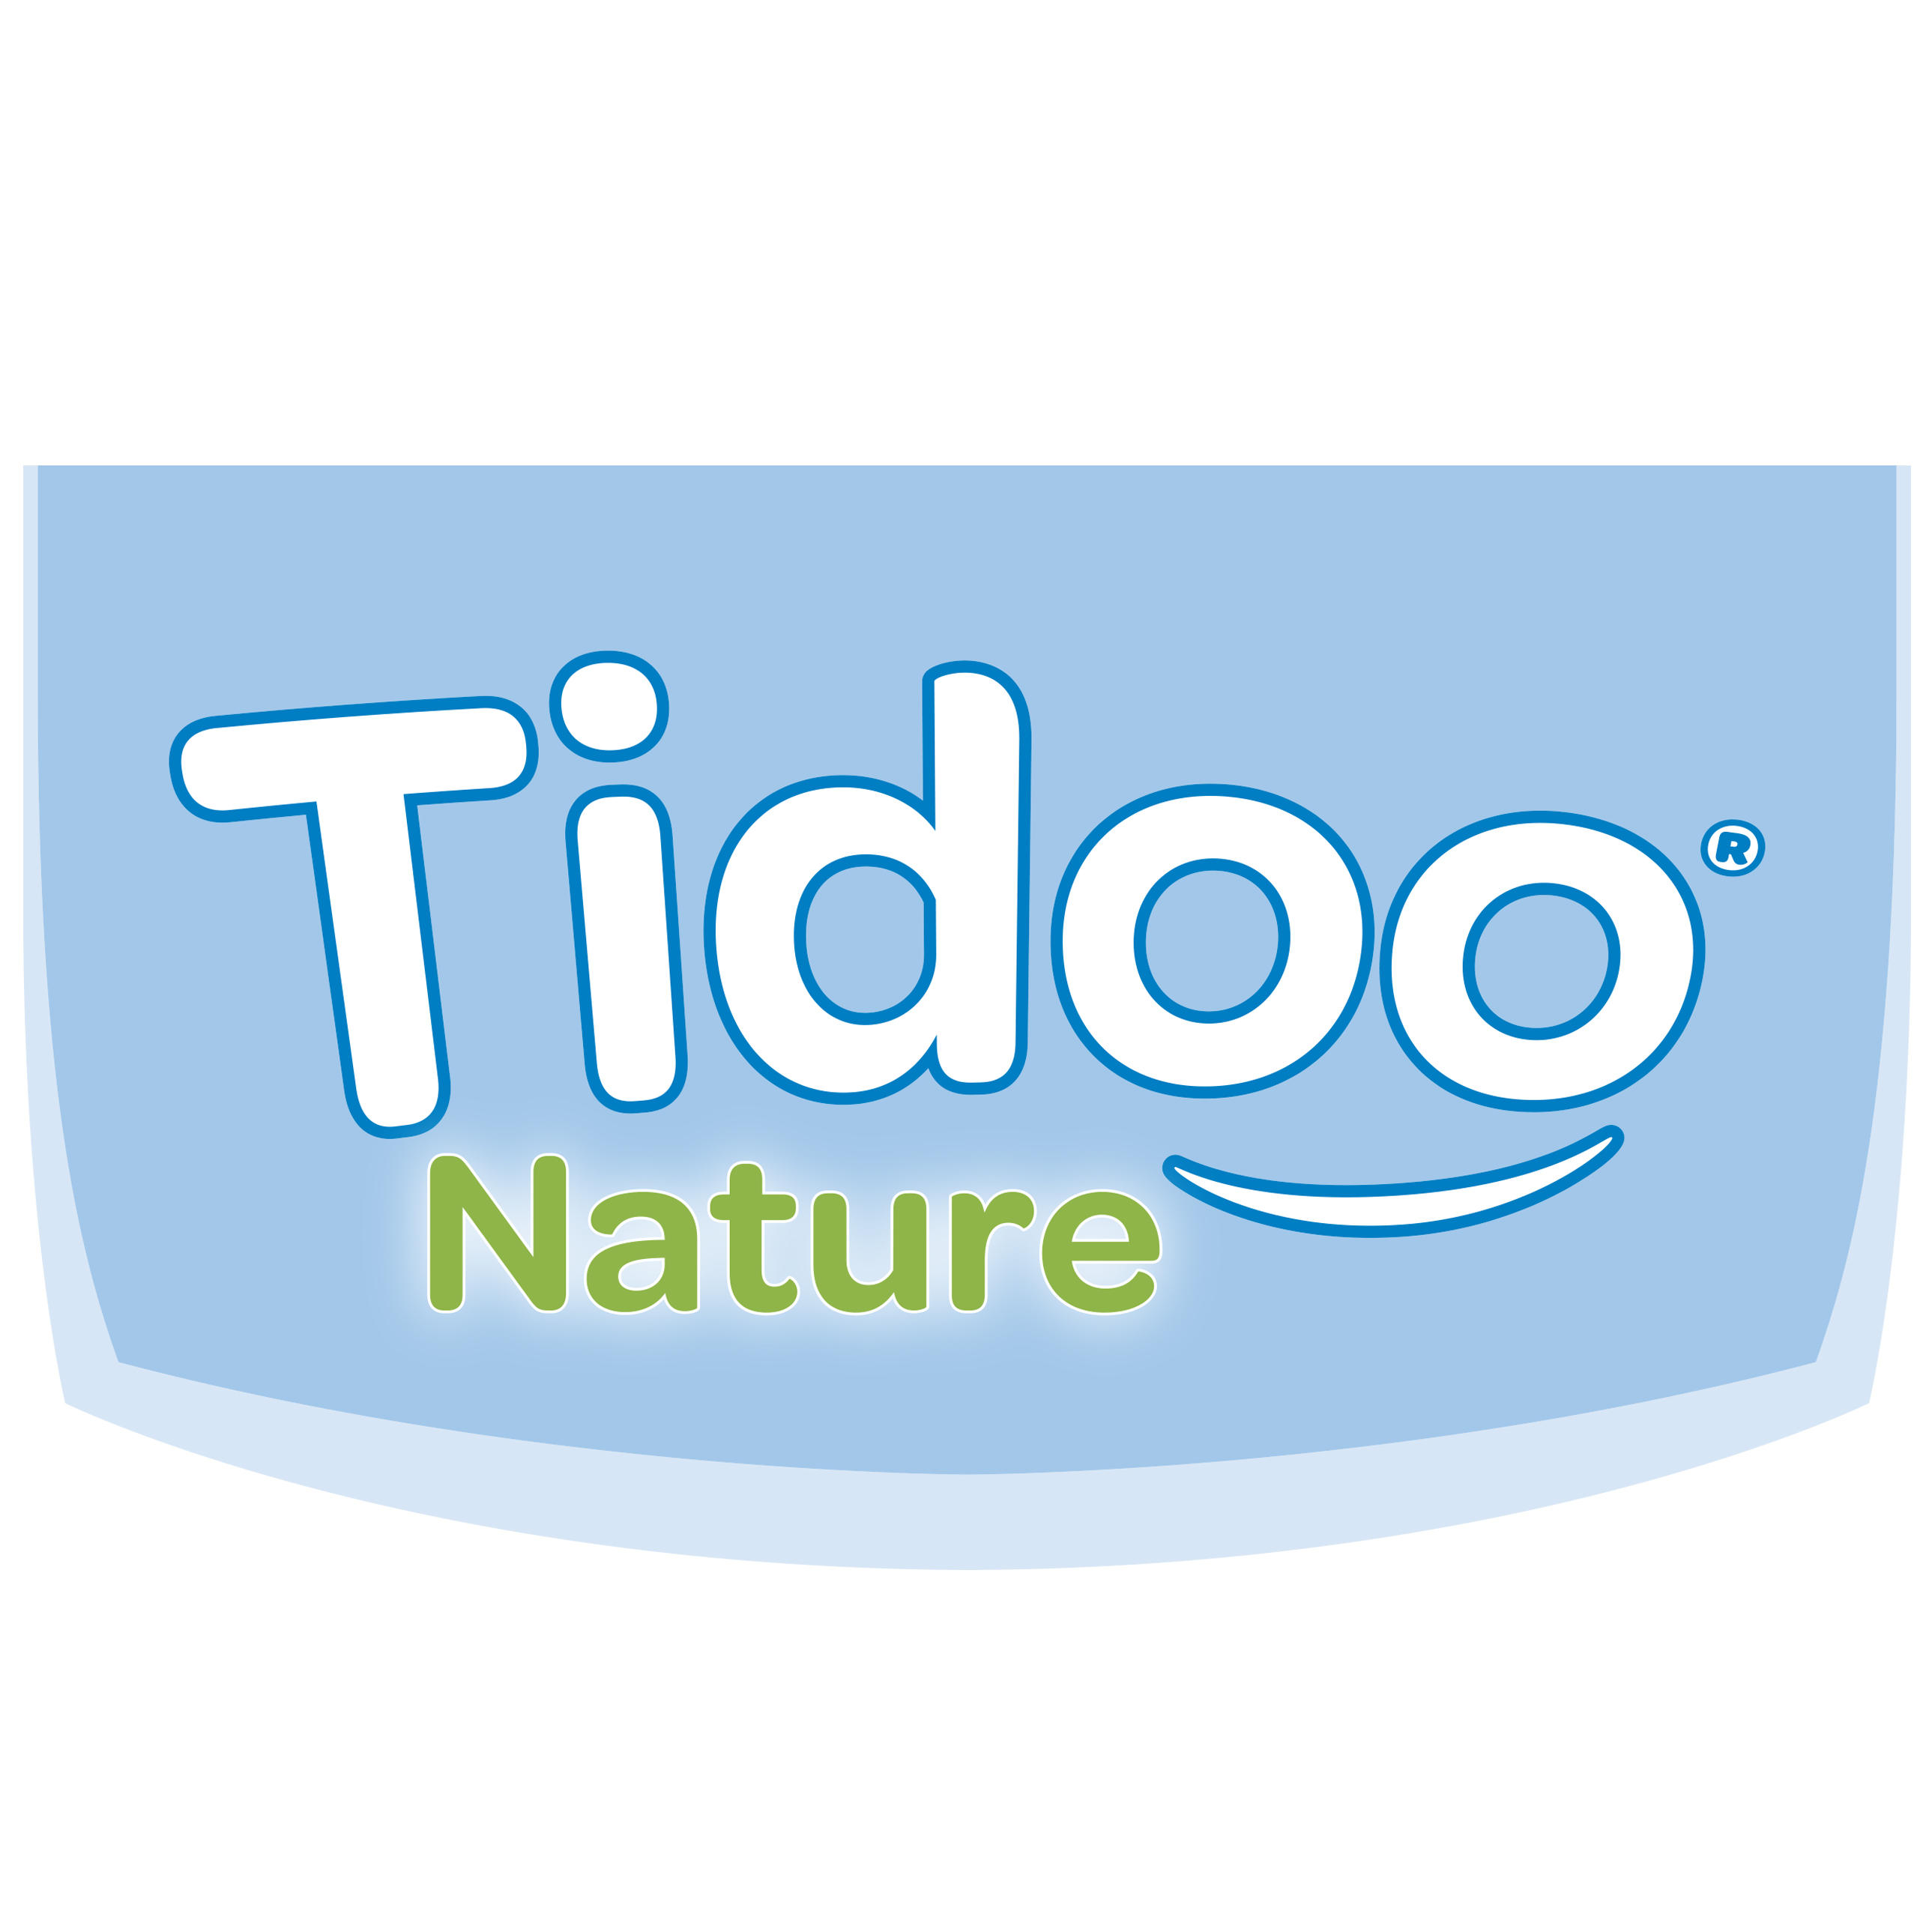 Publirédactionnel : Les couches Tidoo jetables, douces, saines et très écolo